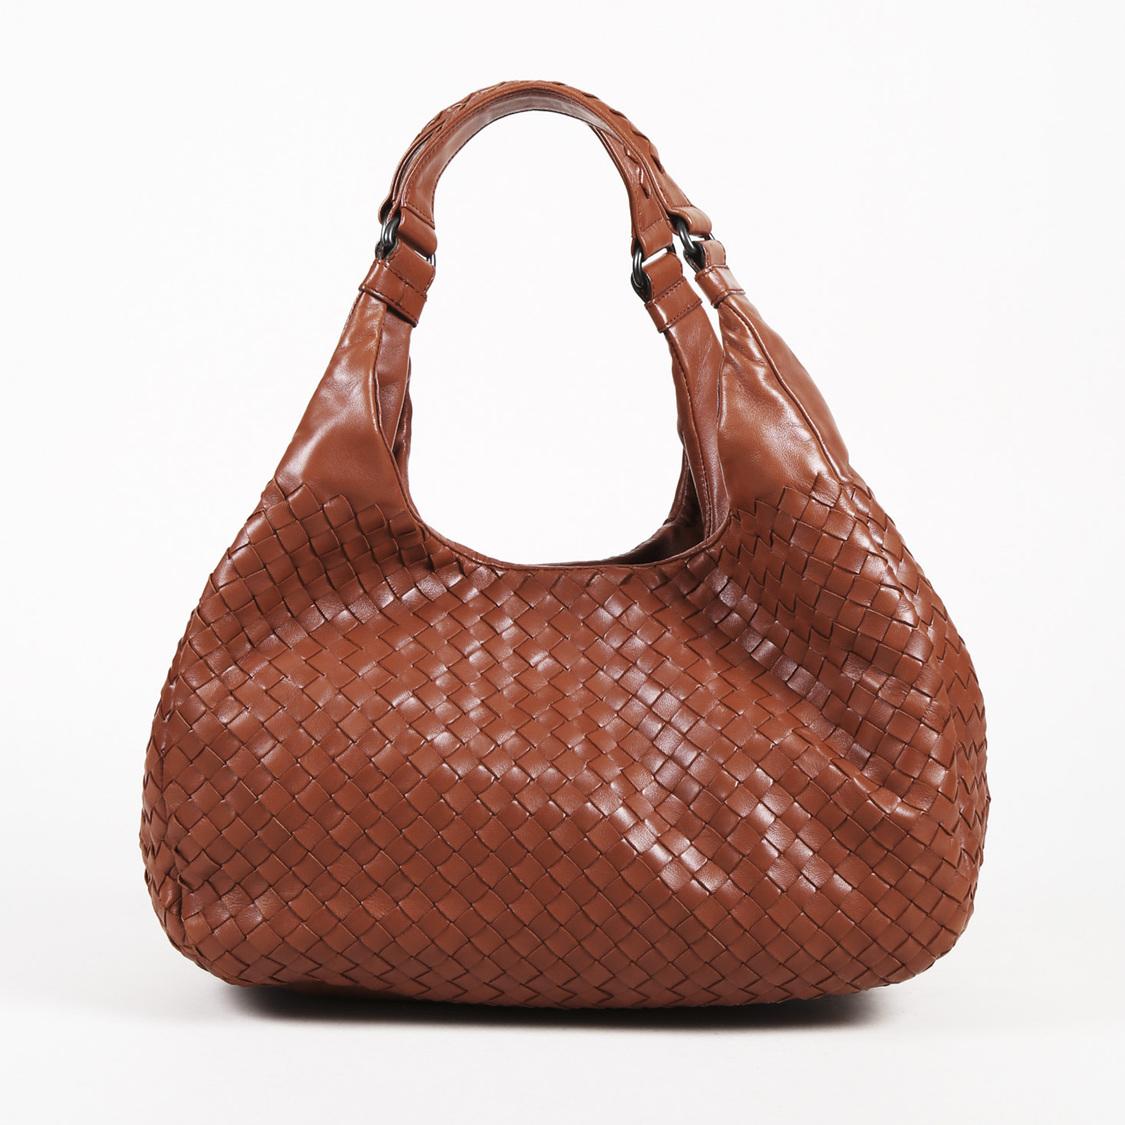 Lyst - Bottega Veneta Brown Intrecciato Leather Hobo Bag in Brown